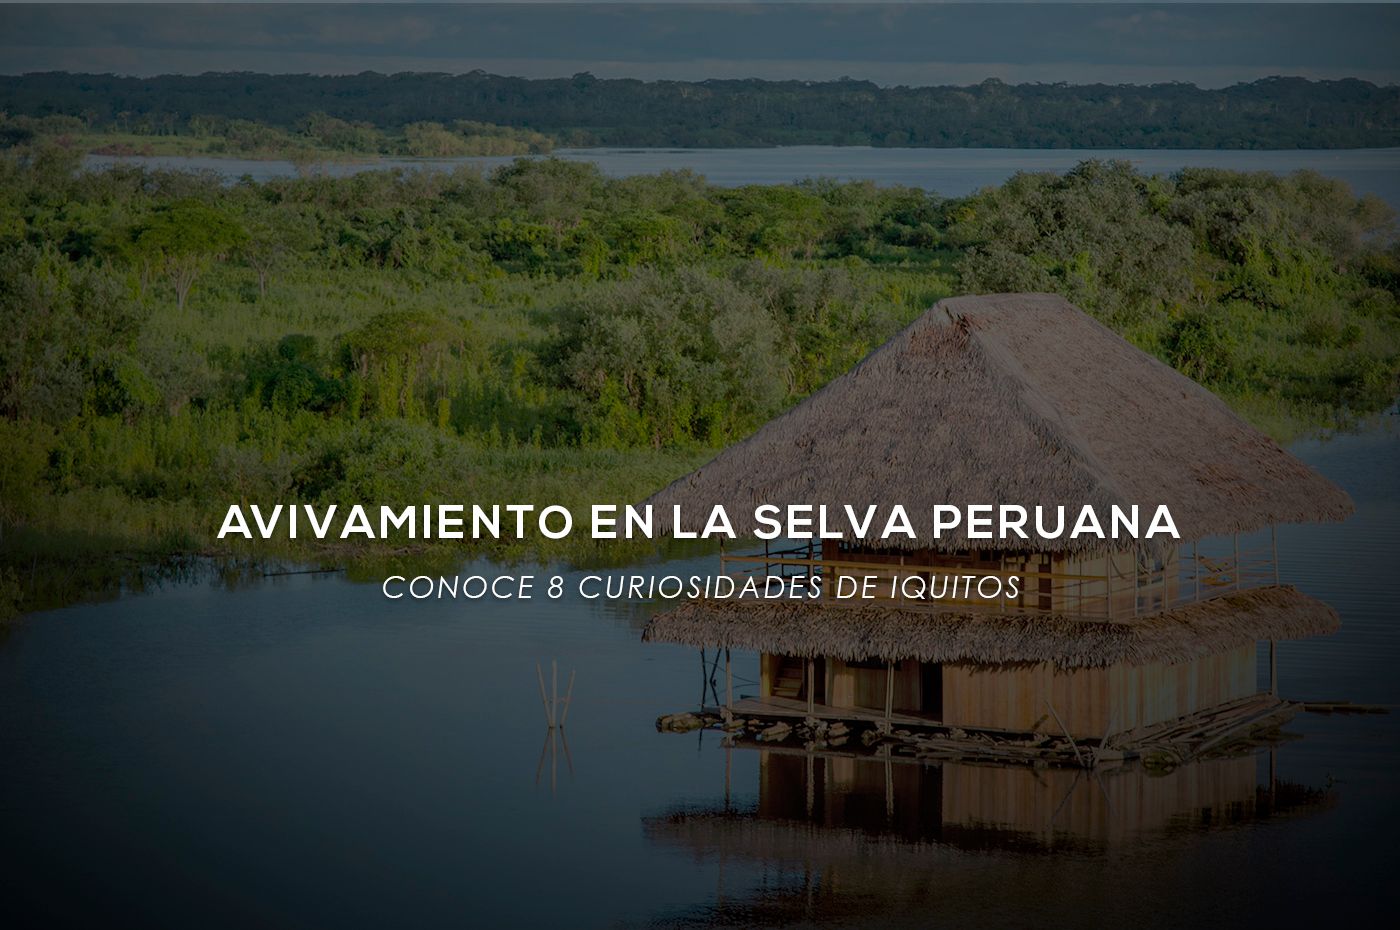 El Avivamiento llega al corazón de la selva en Perú